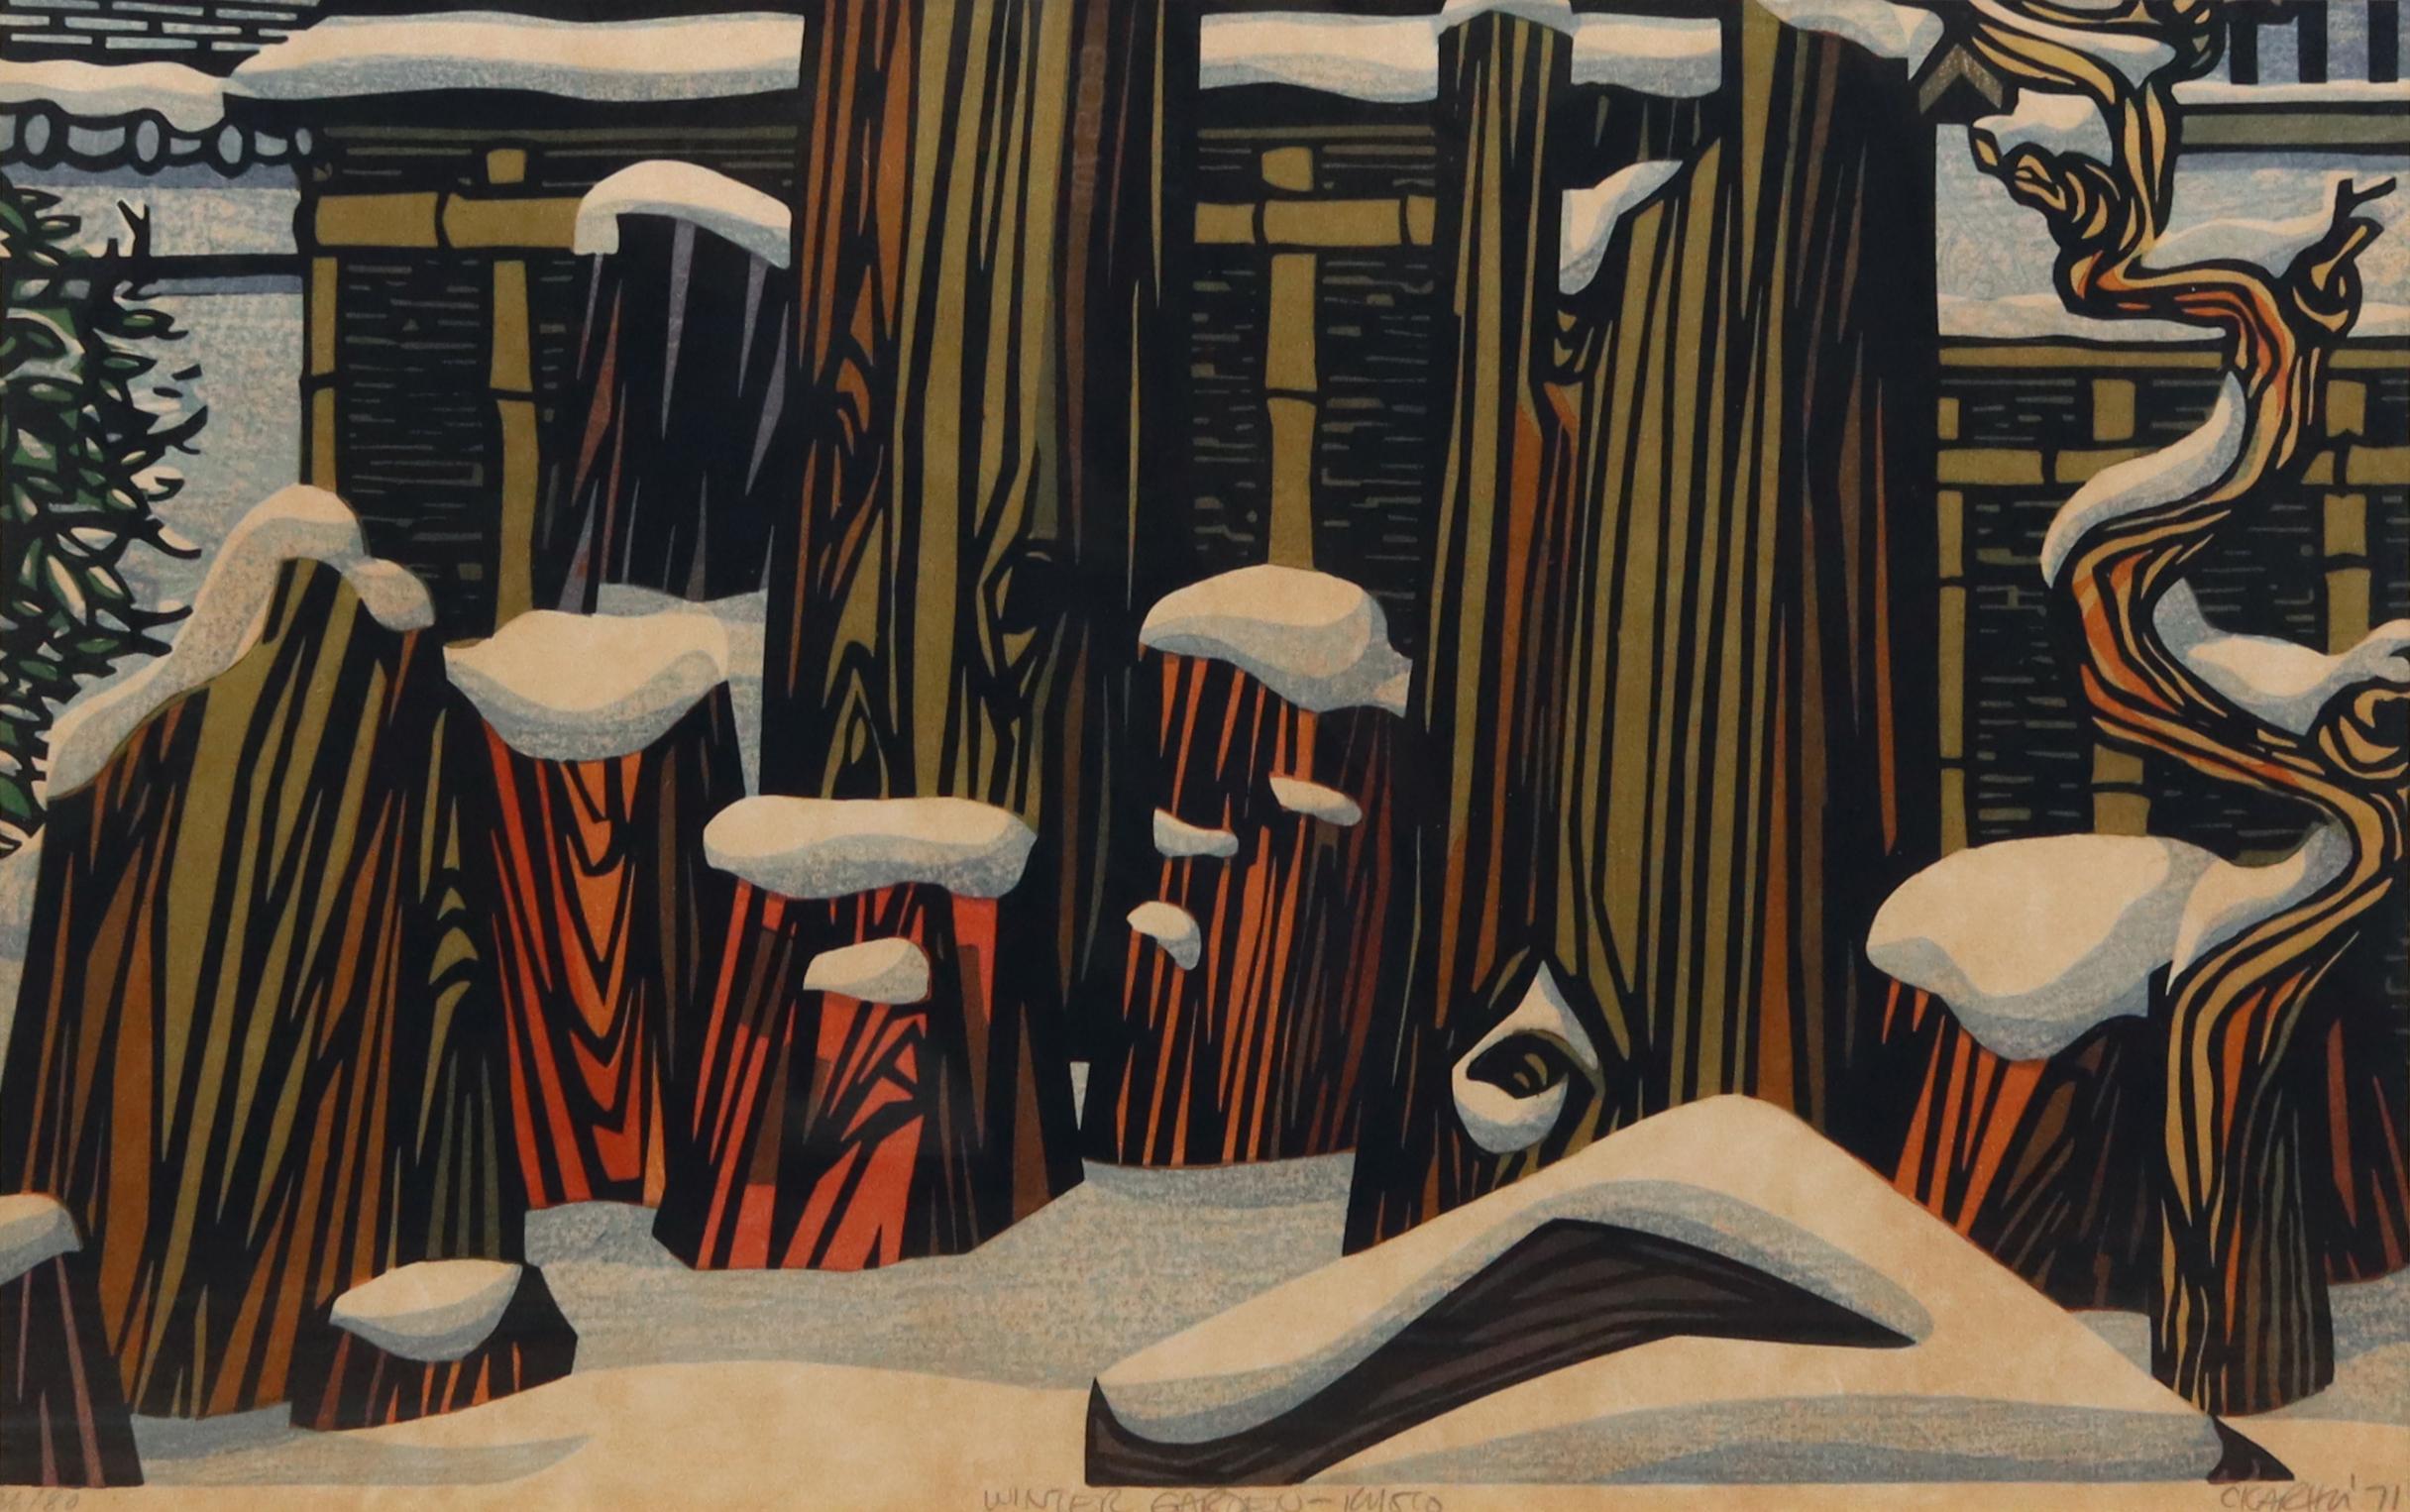 Der finnisch-amerikanische Künstler Clifton Karhu (1927-2007), der in Japan lebte und starb, widmete sich der Kunst des Holzschnitts und gilt heute als einer der bedeutendsten Meister dieses Mediums. Er lebte über 50 Jahre lang in Japan und ließ